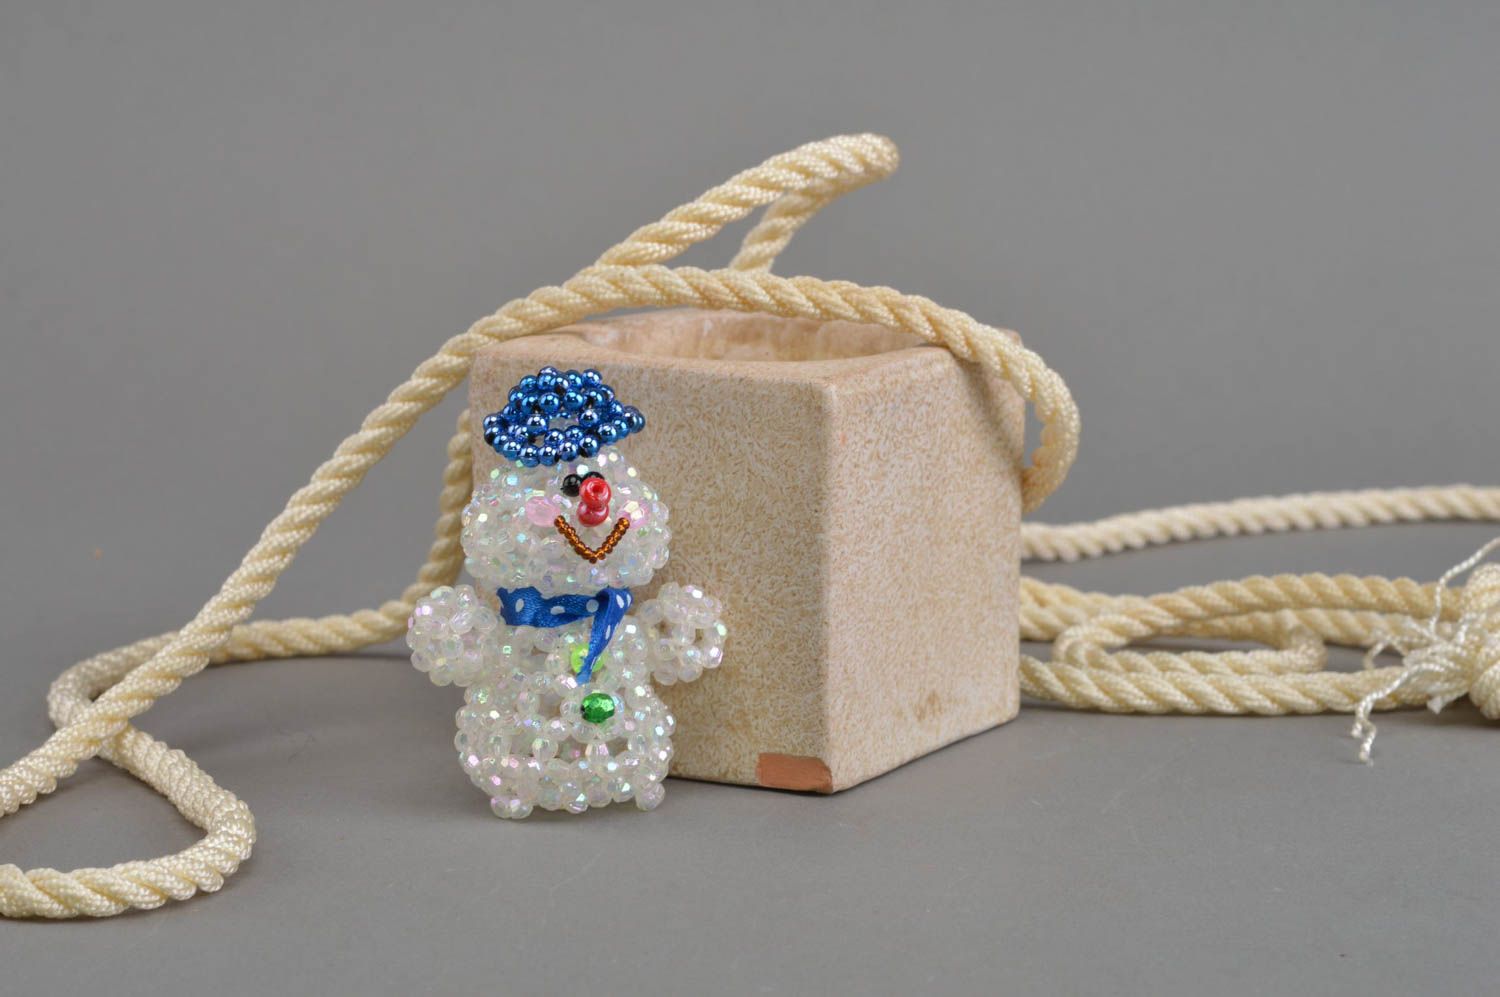 estatueta bonita de lembrança feita à mão de miçangas em forma do boneco de neve foto 1